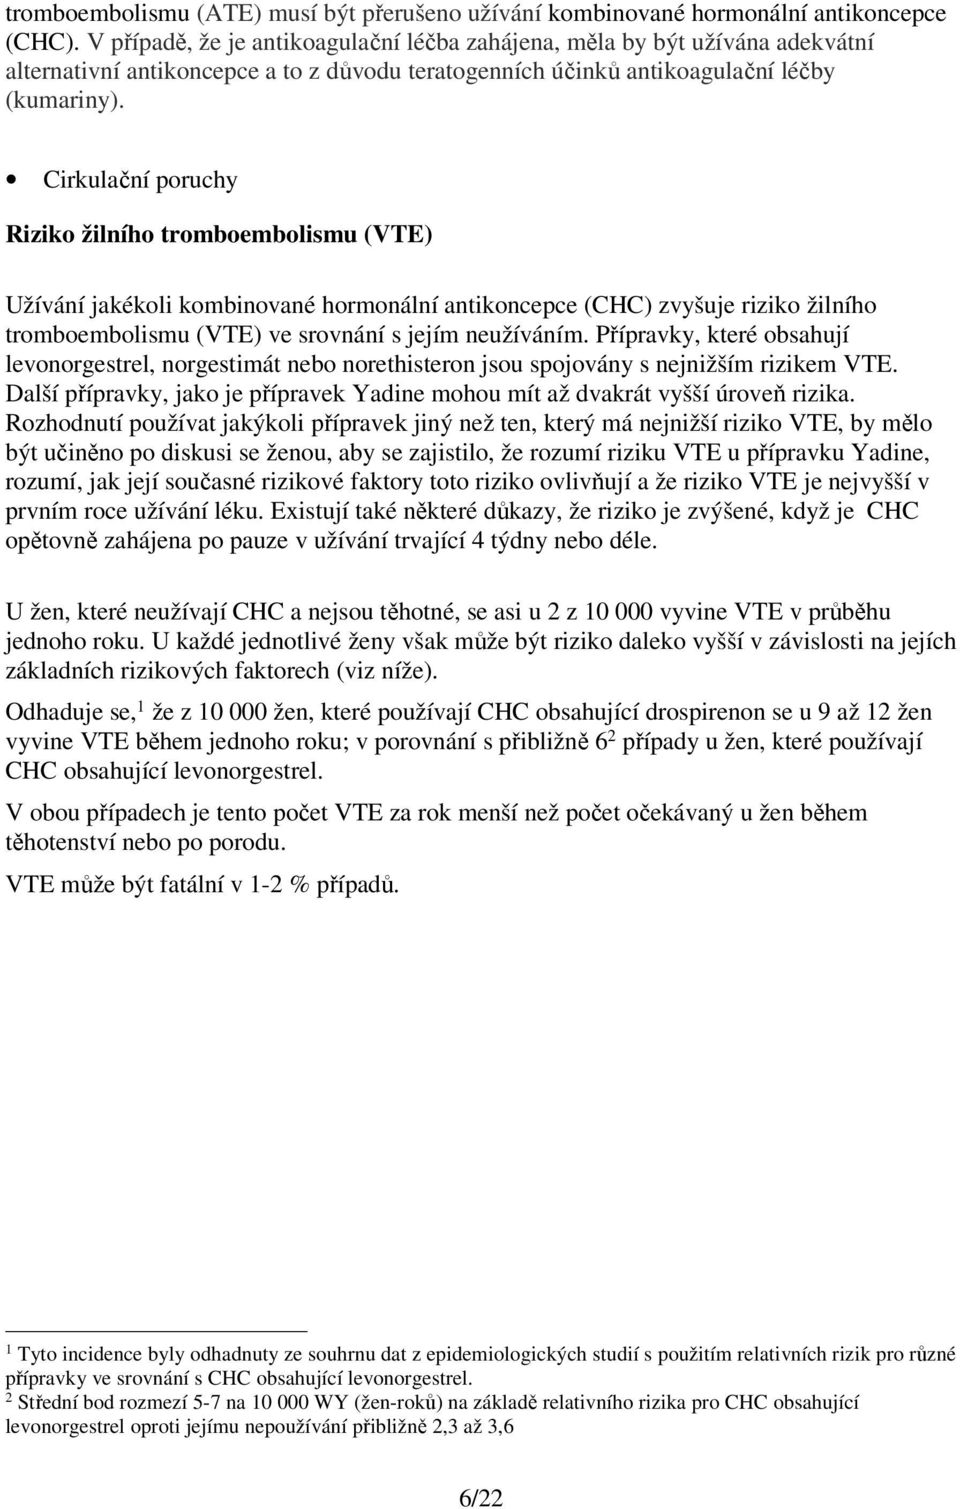 Cirkulační poruchy Riziko žilního tromboembolismu (VTE) Užívání jakékoli kombinované hormonální antikoncepce (CHC) zvyšuje riziko žilního tromboembolismu (VTE) ve srovnání s jejím neužíváním.